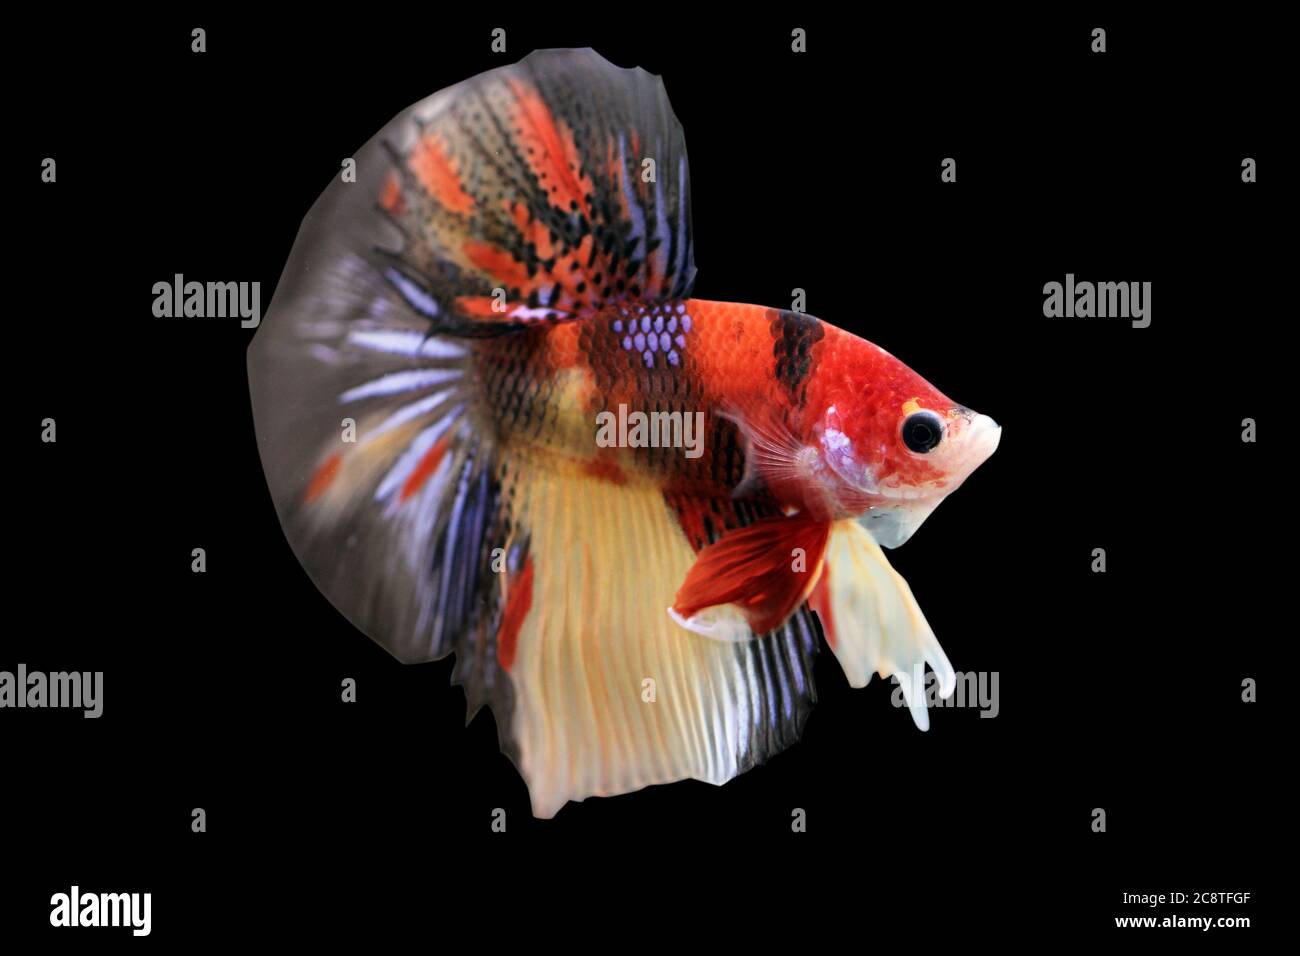 Betta Koi Nemo HM Halfmoon plakat Male or Plakat Fighting Fish Splendens on Black Background. Stock Photo